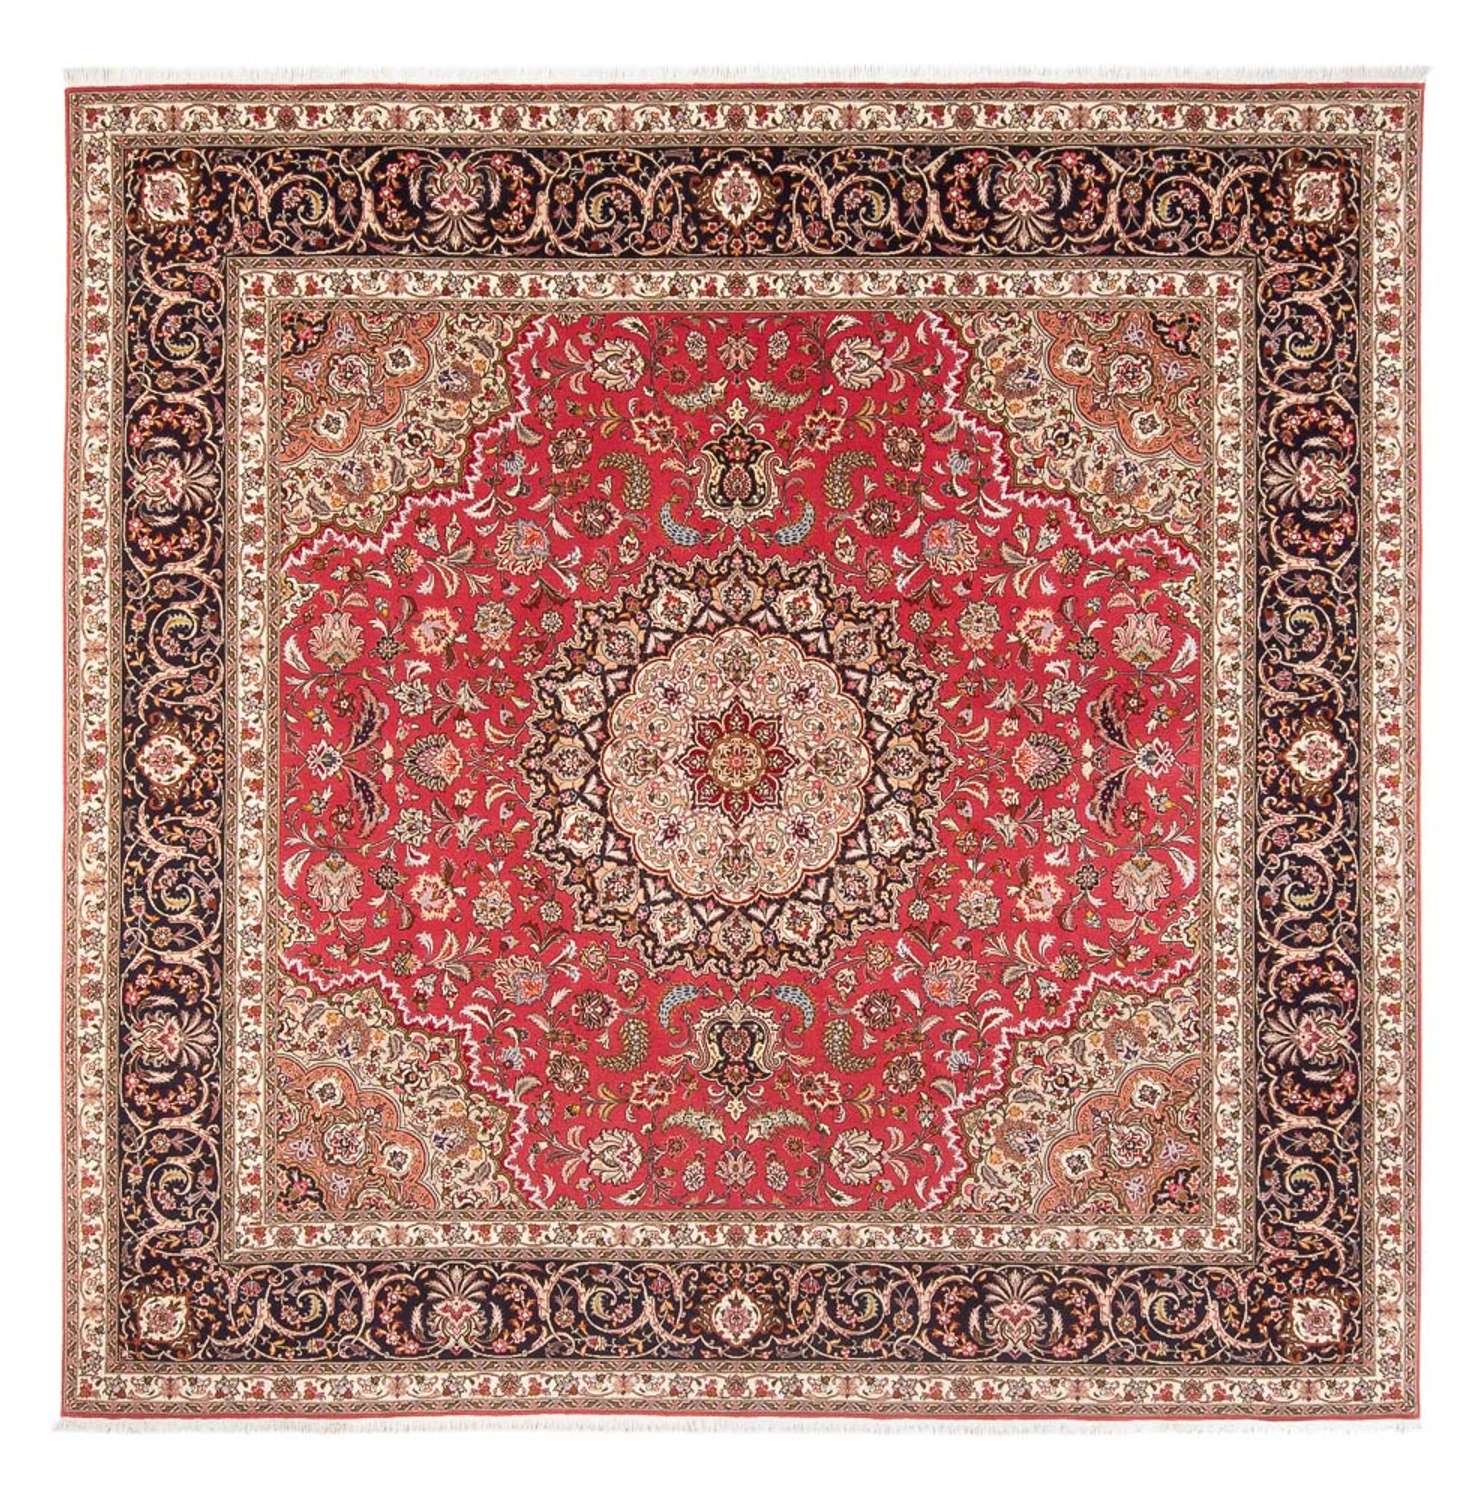 Dywan perski - Tabriz - Królewski kwadratowy  - 252 x 252 cm - czerwony